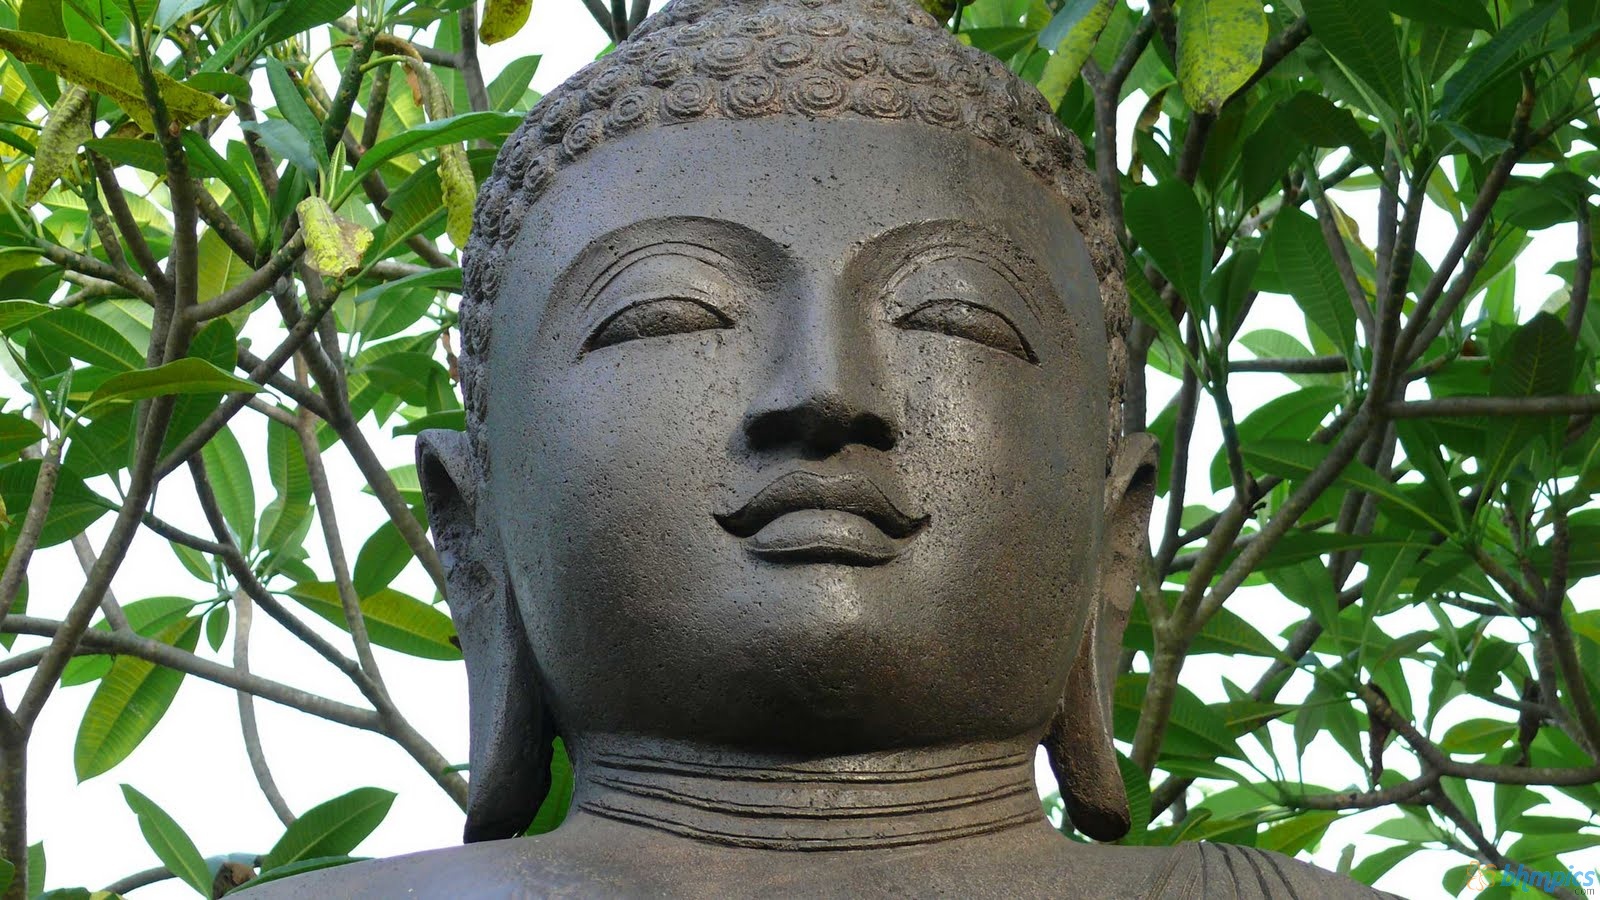 Lord Buddha HD Wallpaper God